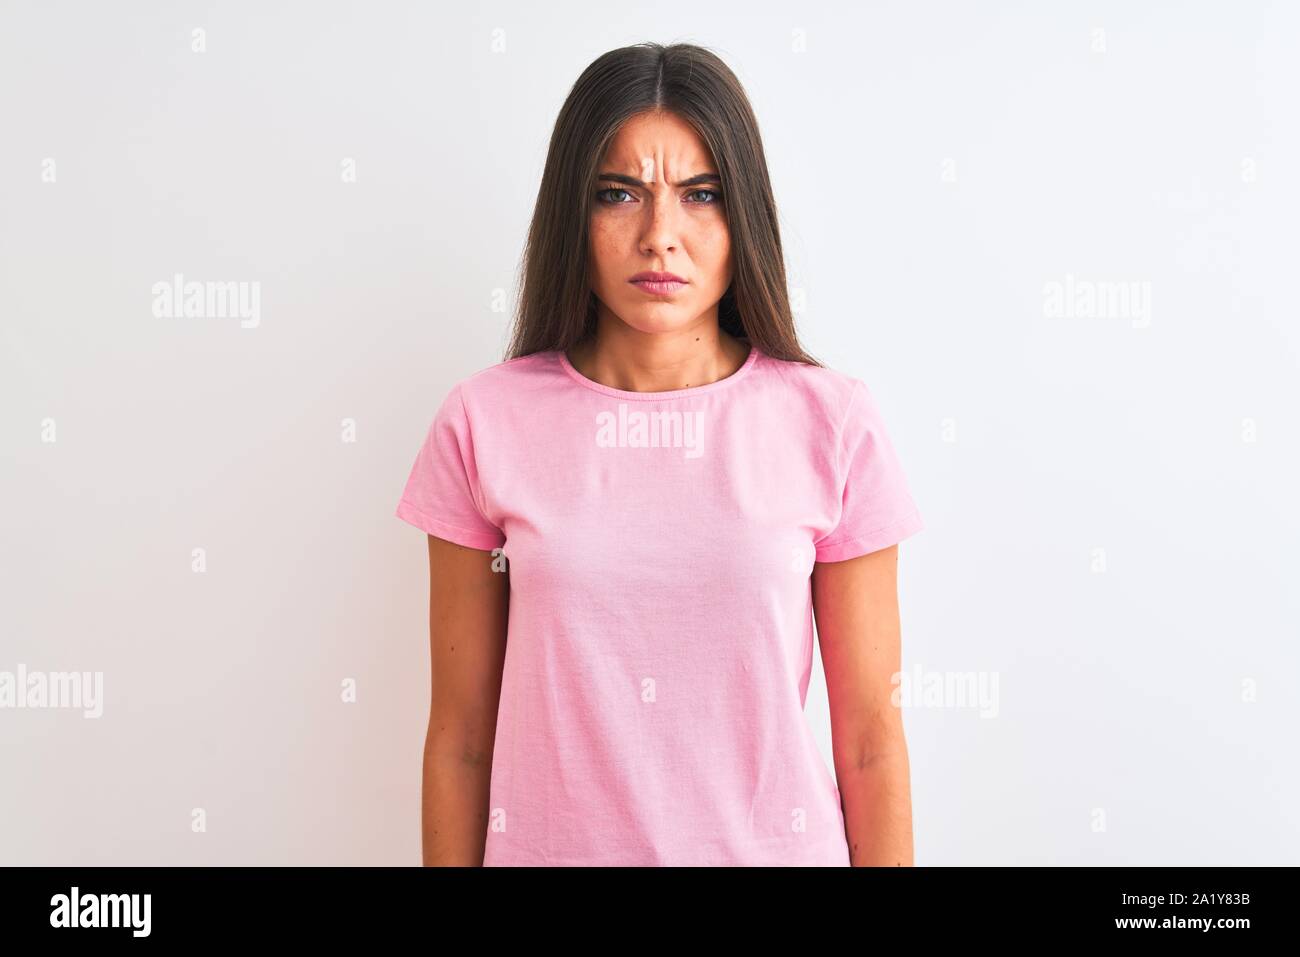 Junge schöne Frau tragen rosa casual t-shirt stehend über isoliert weißer  Hintergrund Skeptiker und nervös und runzelte verärgert wegen des Problems.  Nega Stockfotografie - Alamy